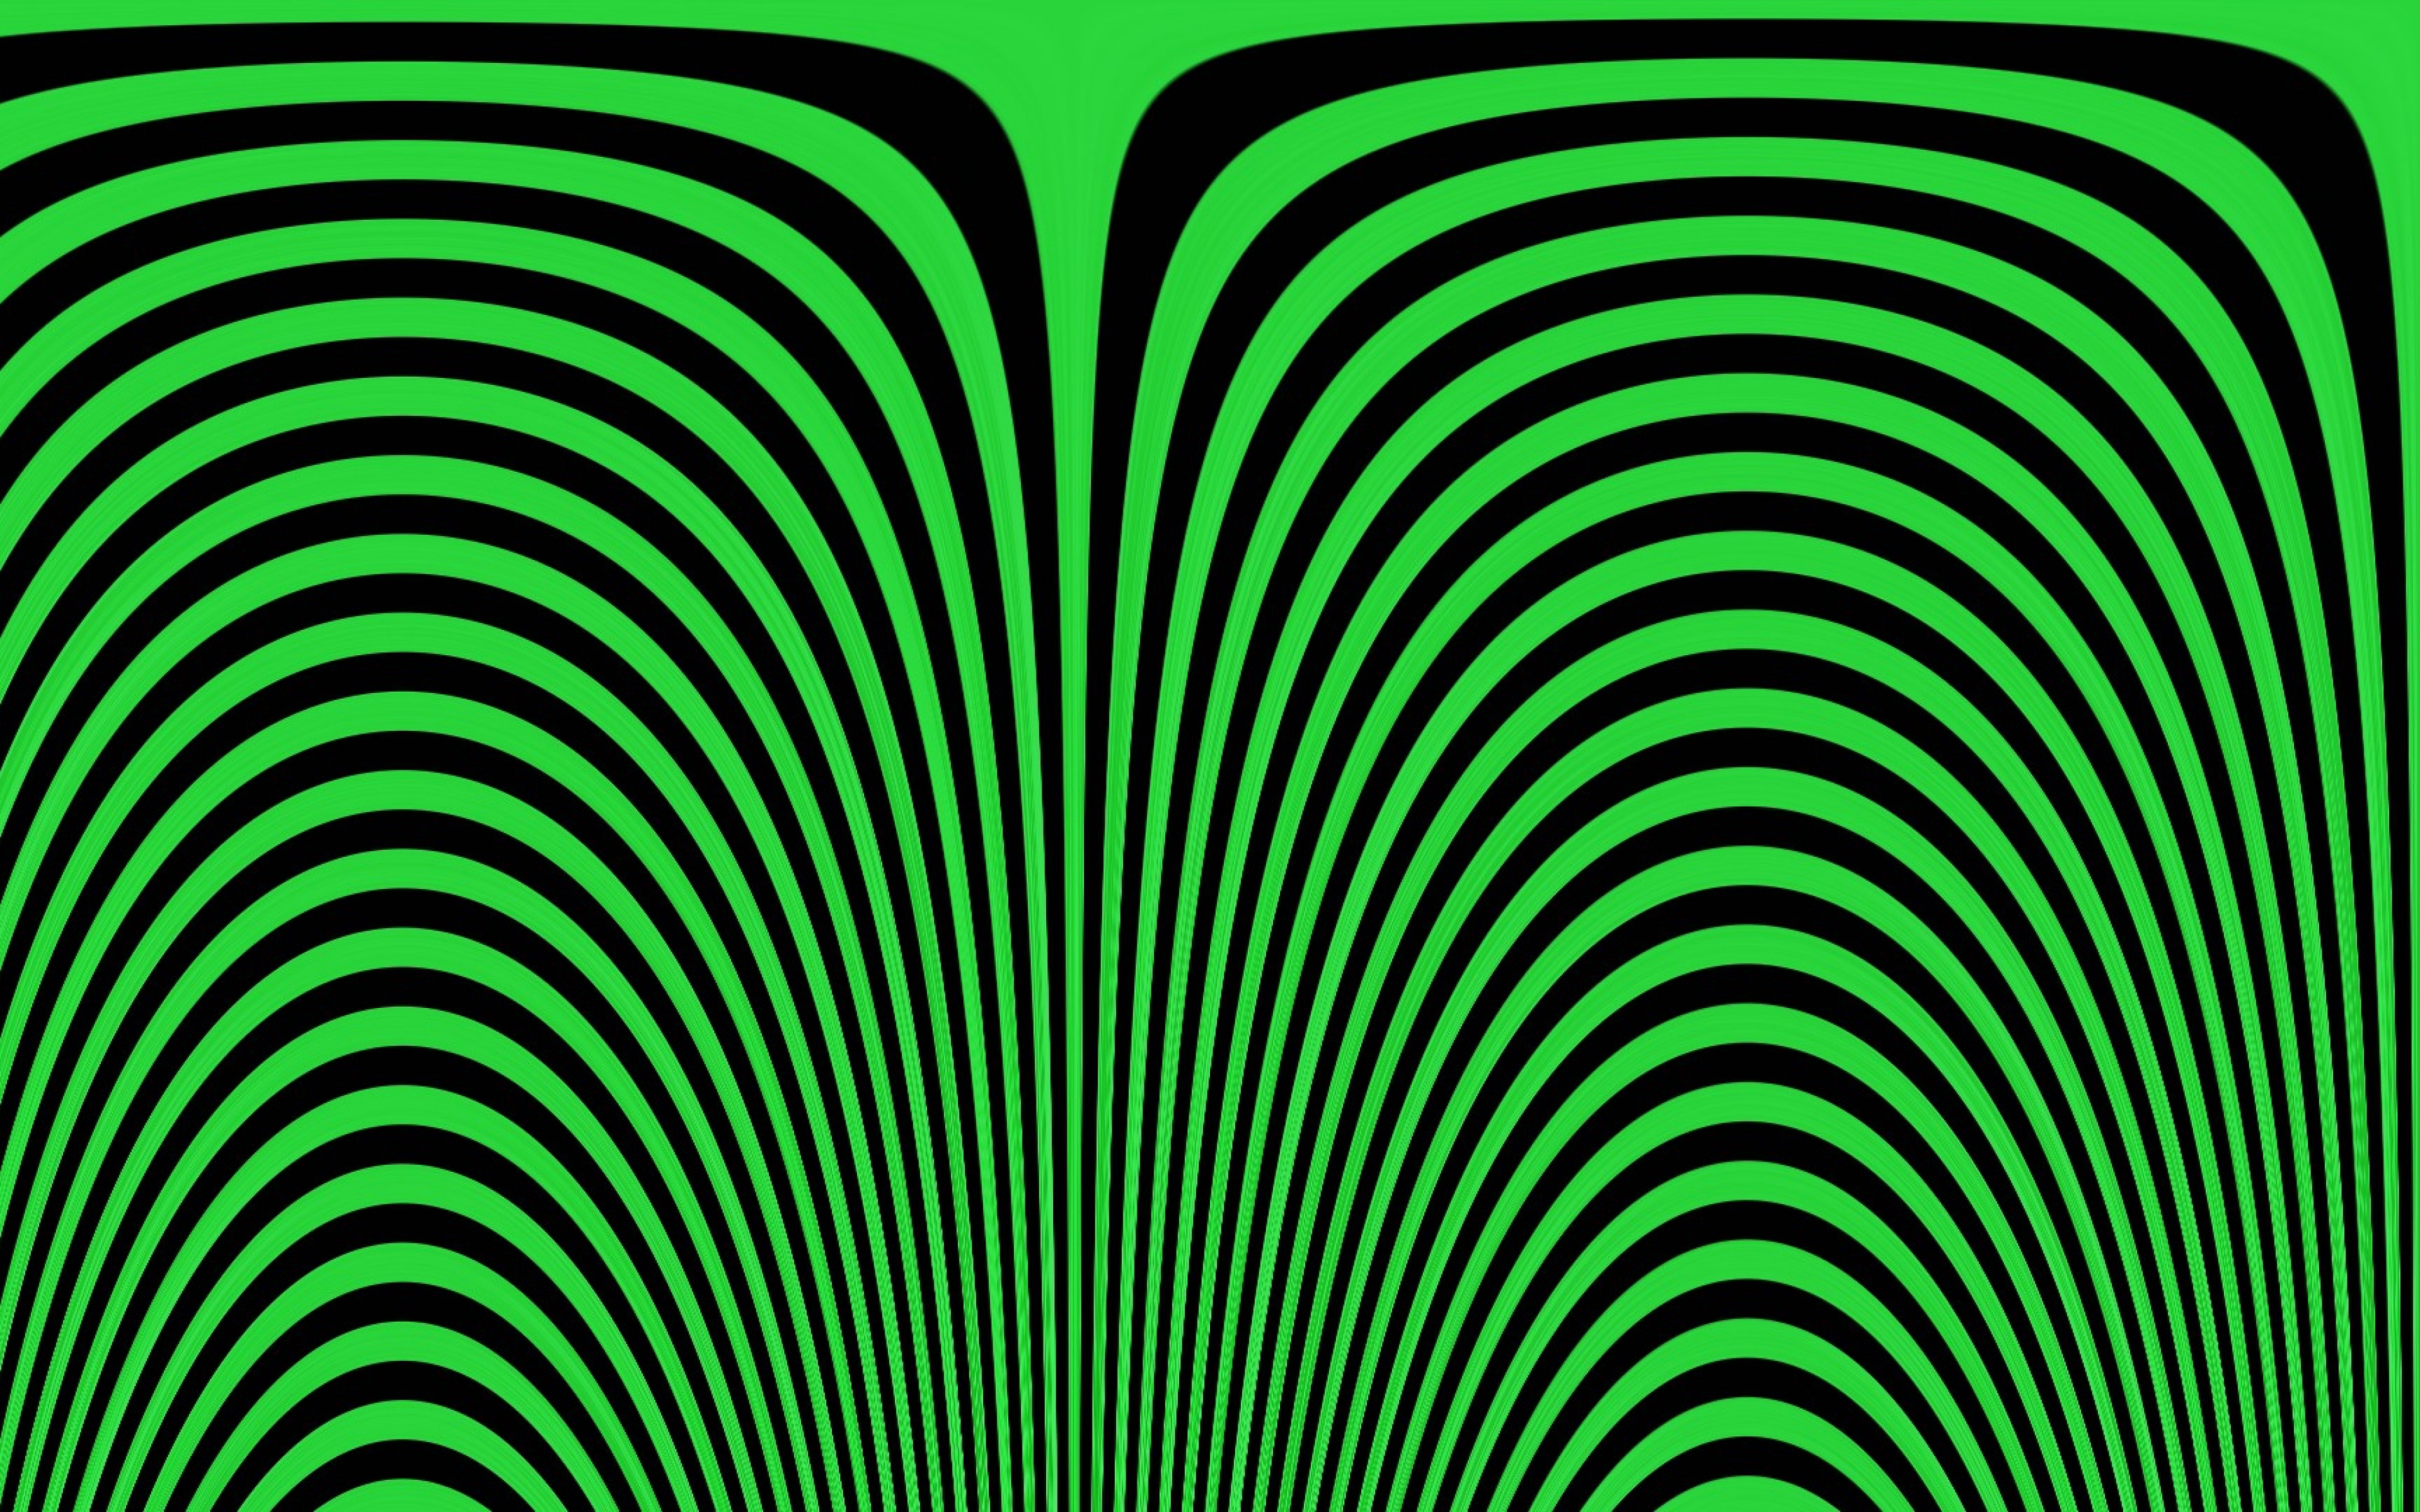 illusione ottica wallpaper hd,verde,modello,linea,design,cerchio